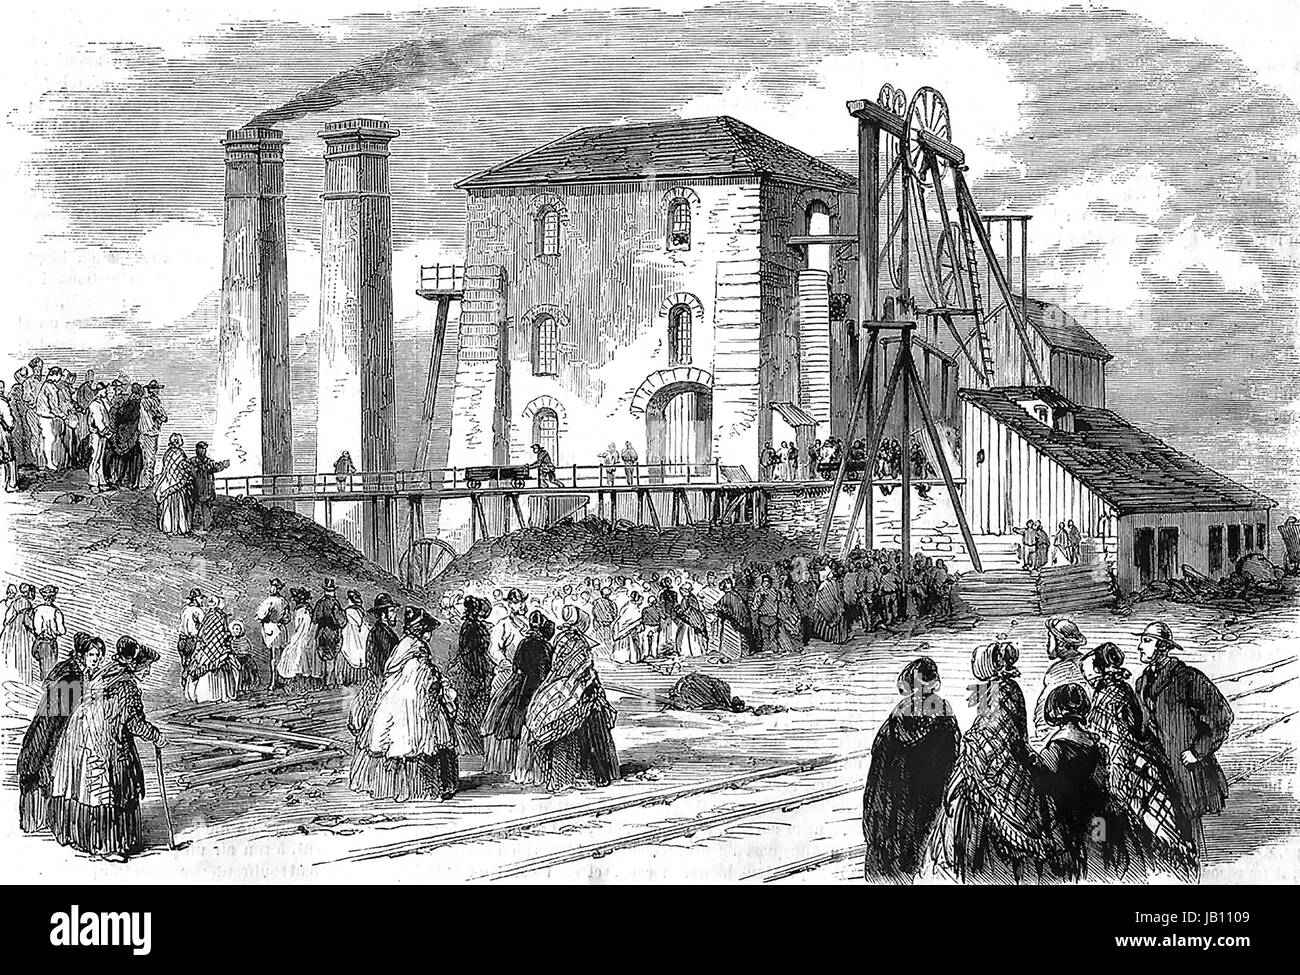 HARTLEY PICTOU 16 janvier 1862. La foule à l'extérieur de la mine de charbon de Northumberland après un moteur de pompage a éclaté entraînant la mort de 204 mineurs. Banque D'Images